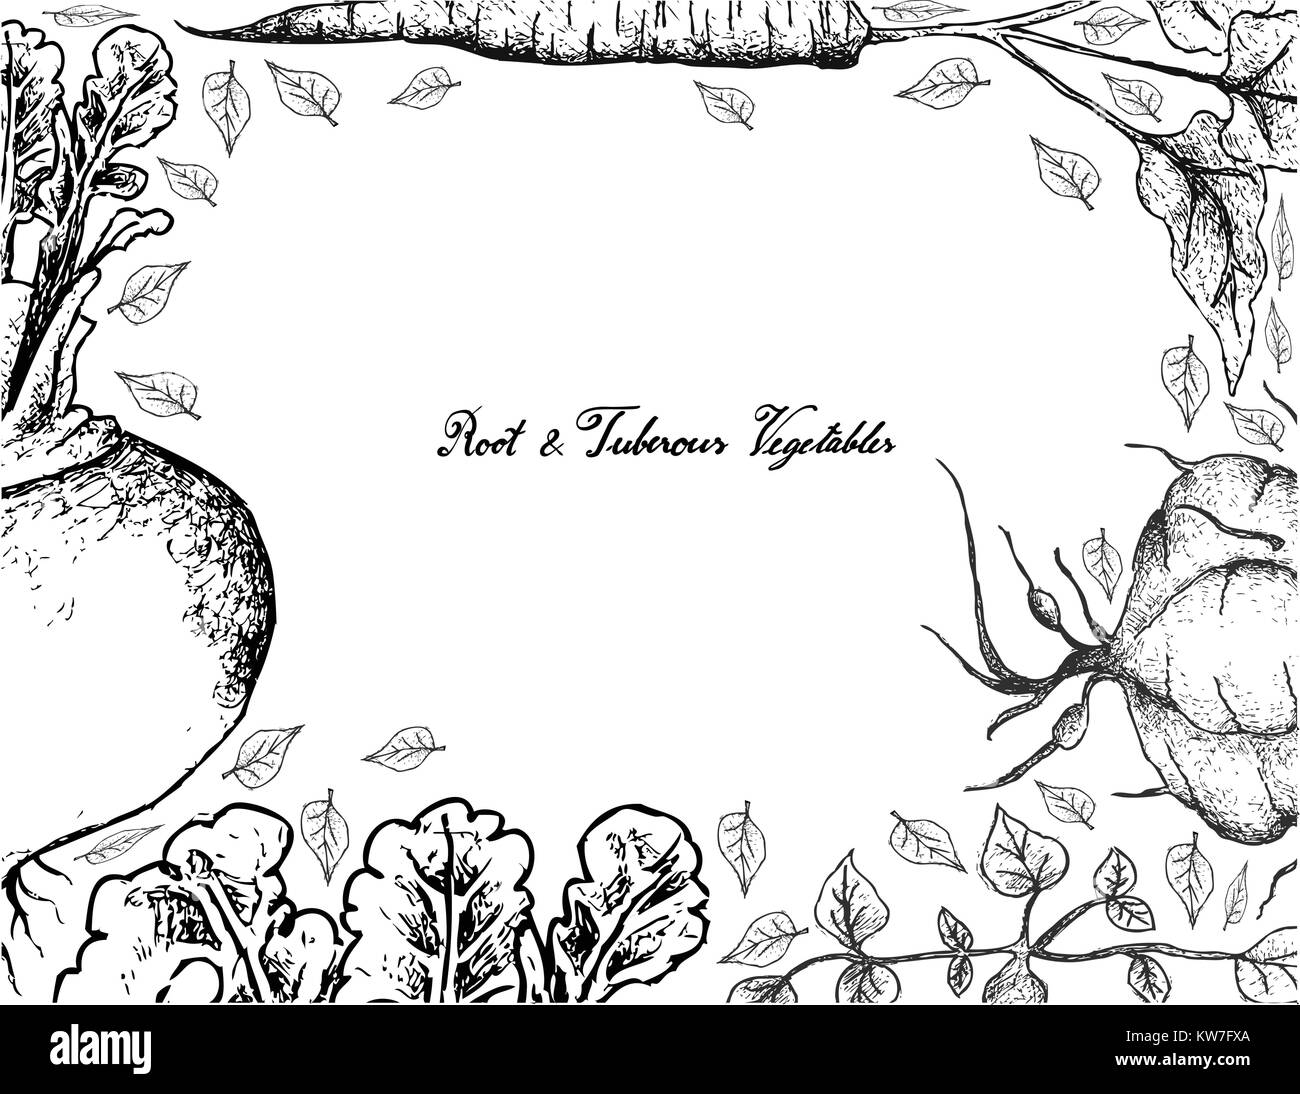 Root und knötchenförmige Gemüse, Illustration von Hand gezeichnete Skizze von frischem Rübe, Klette und Ahipa Pflanzen mit Blättern isoliert auf weißem Backgrou Stock Vektor